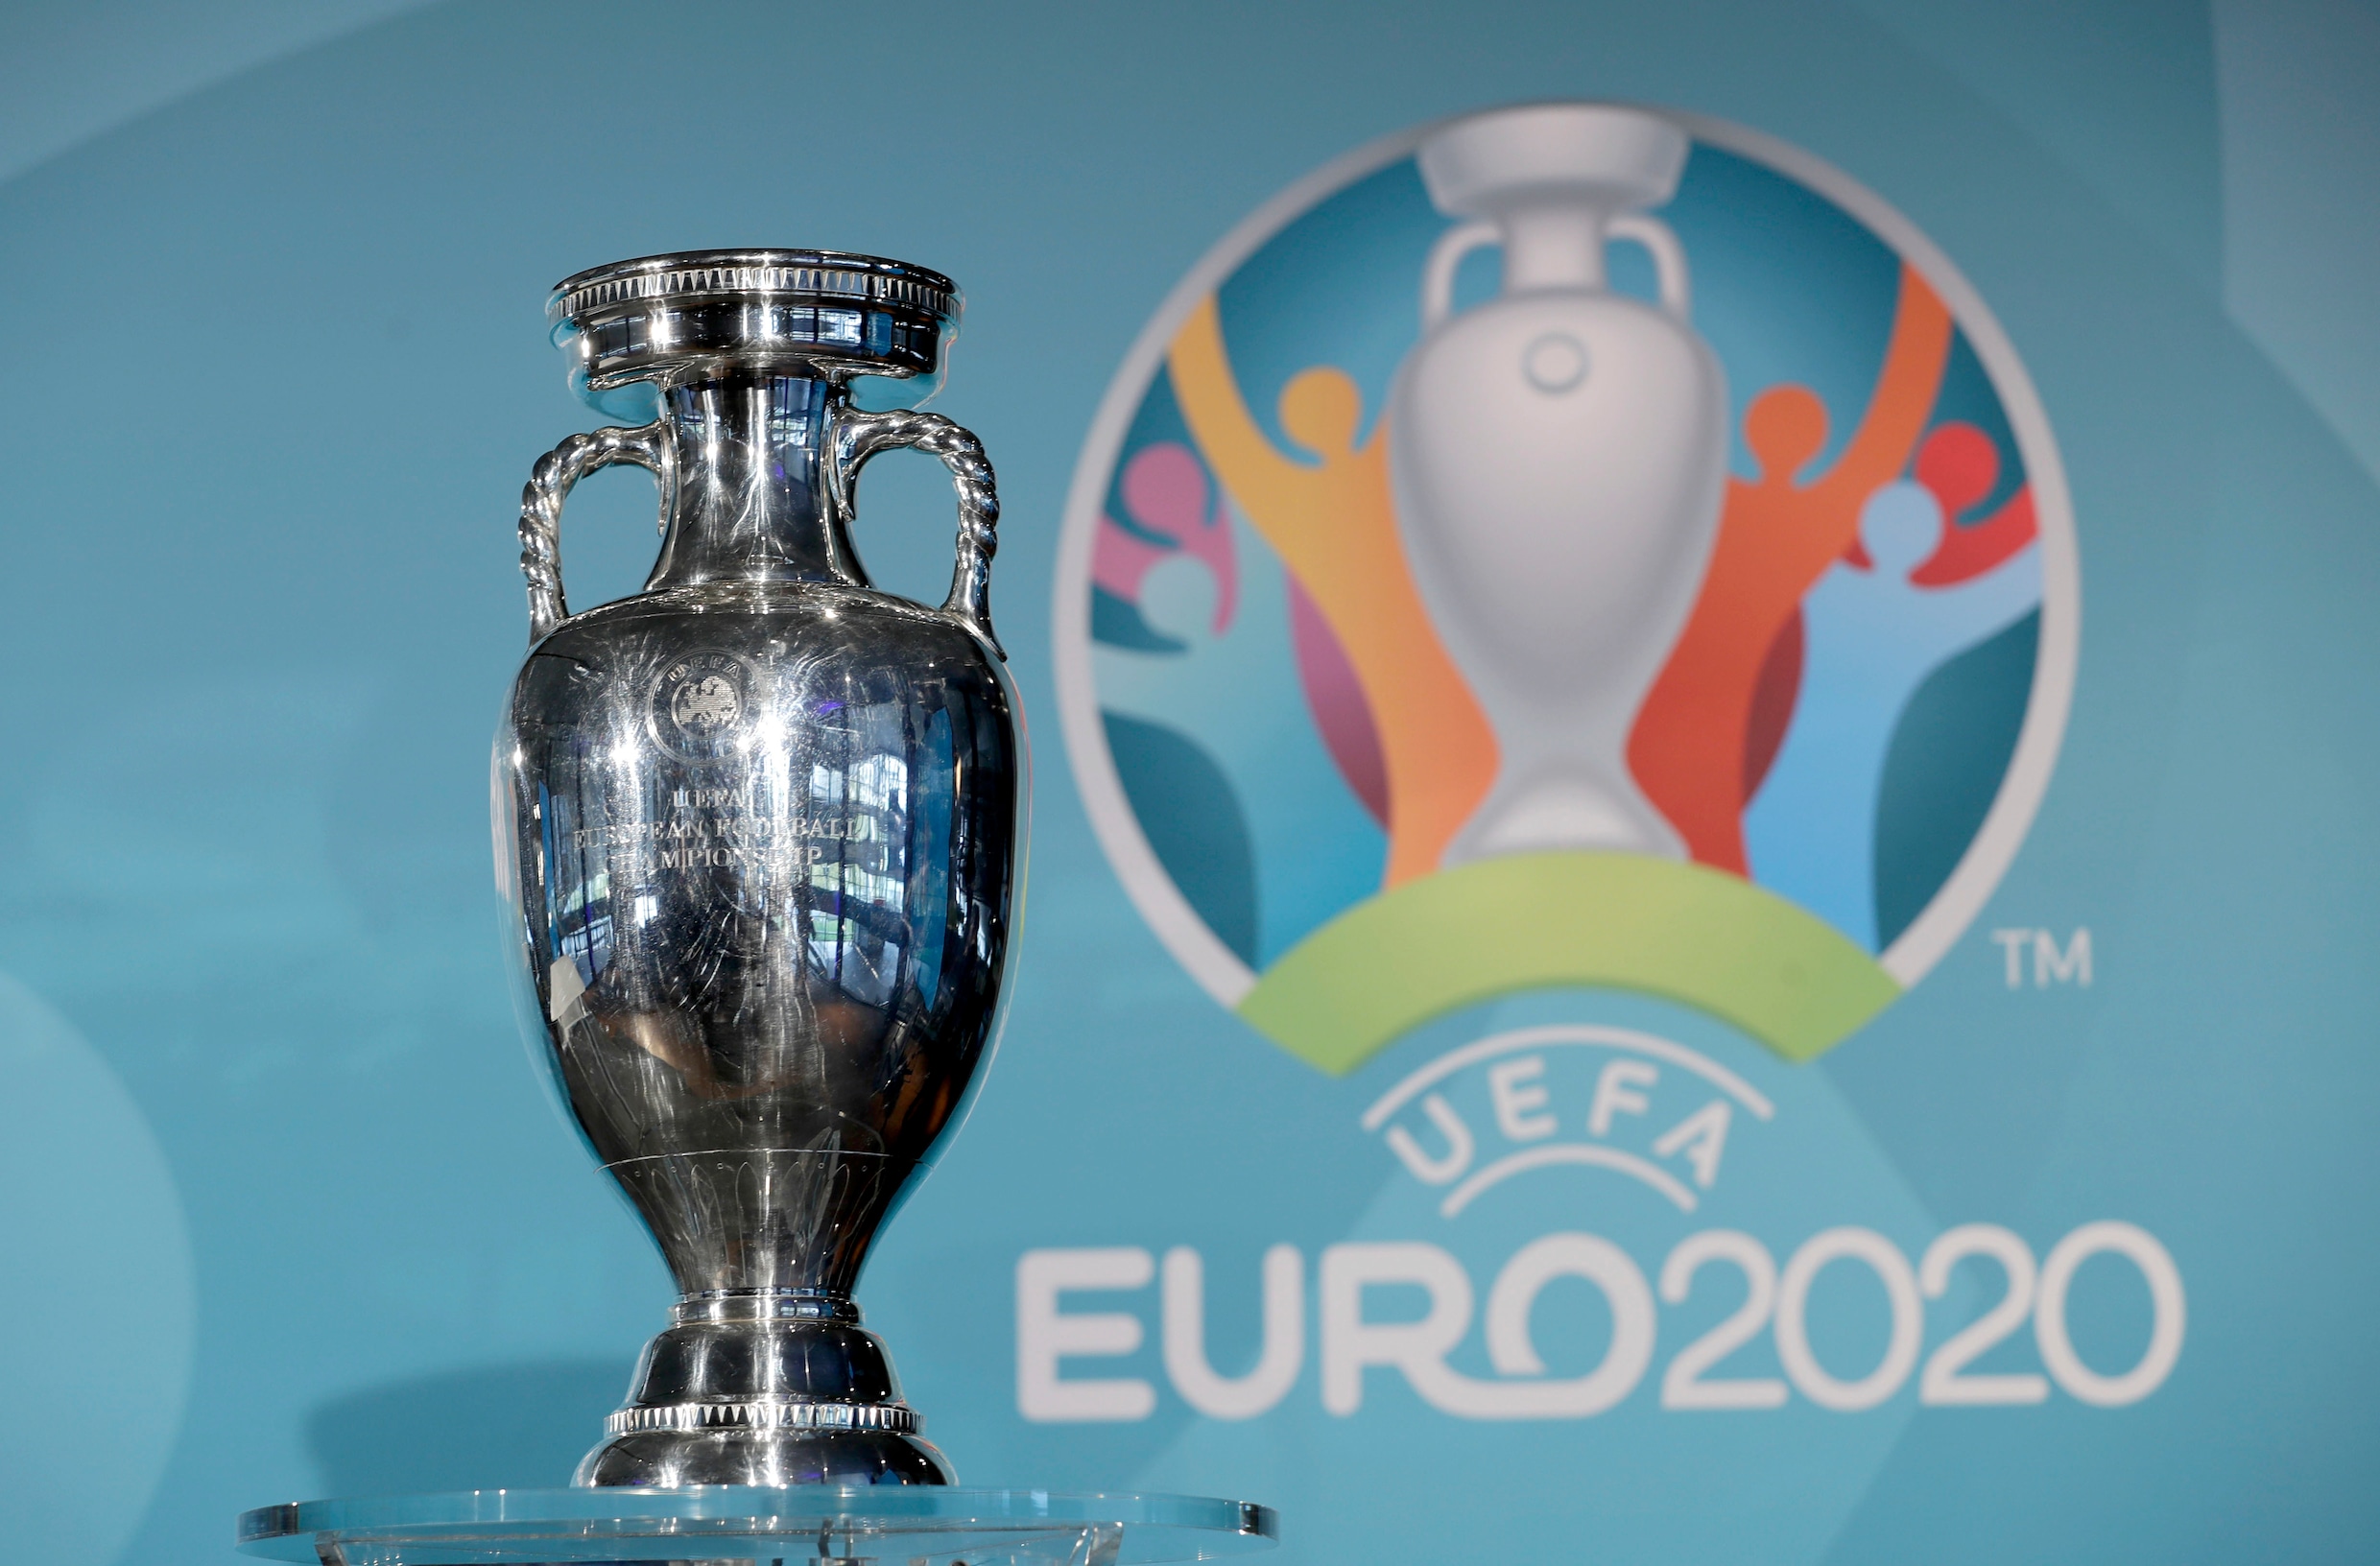 Geen Europees kampioenschap voetbal komende zomer: EURO 2020 uitgesteld naar 2021